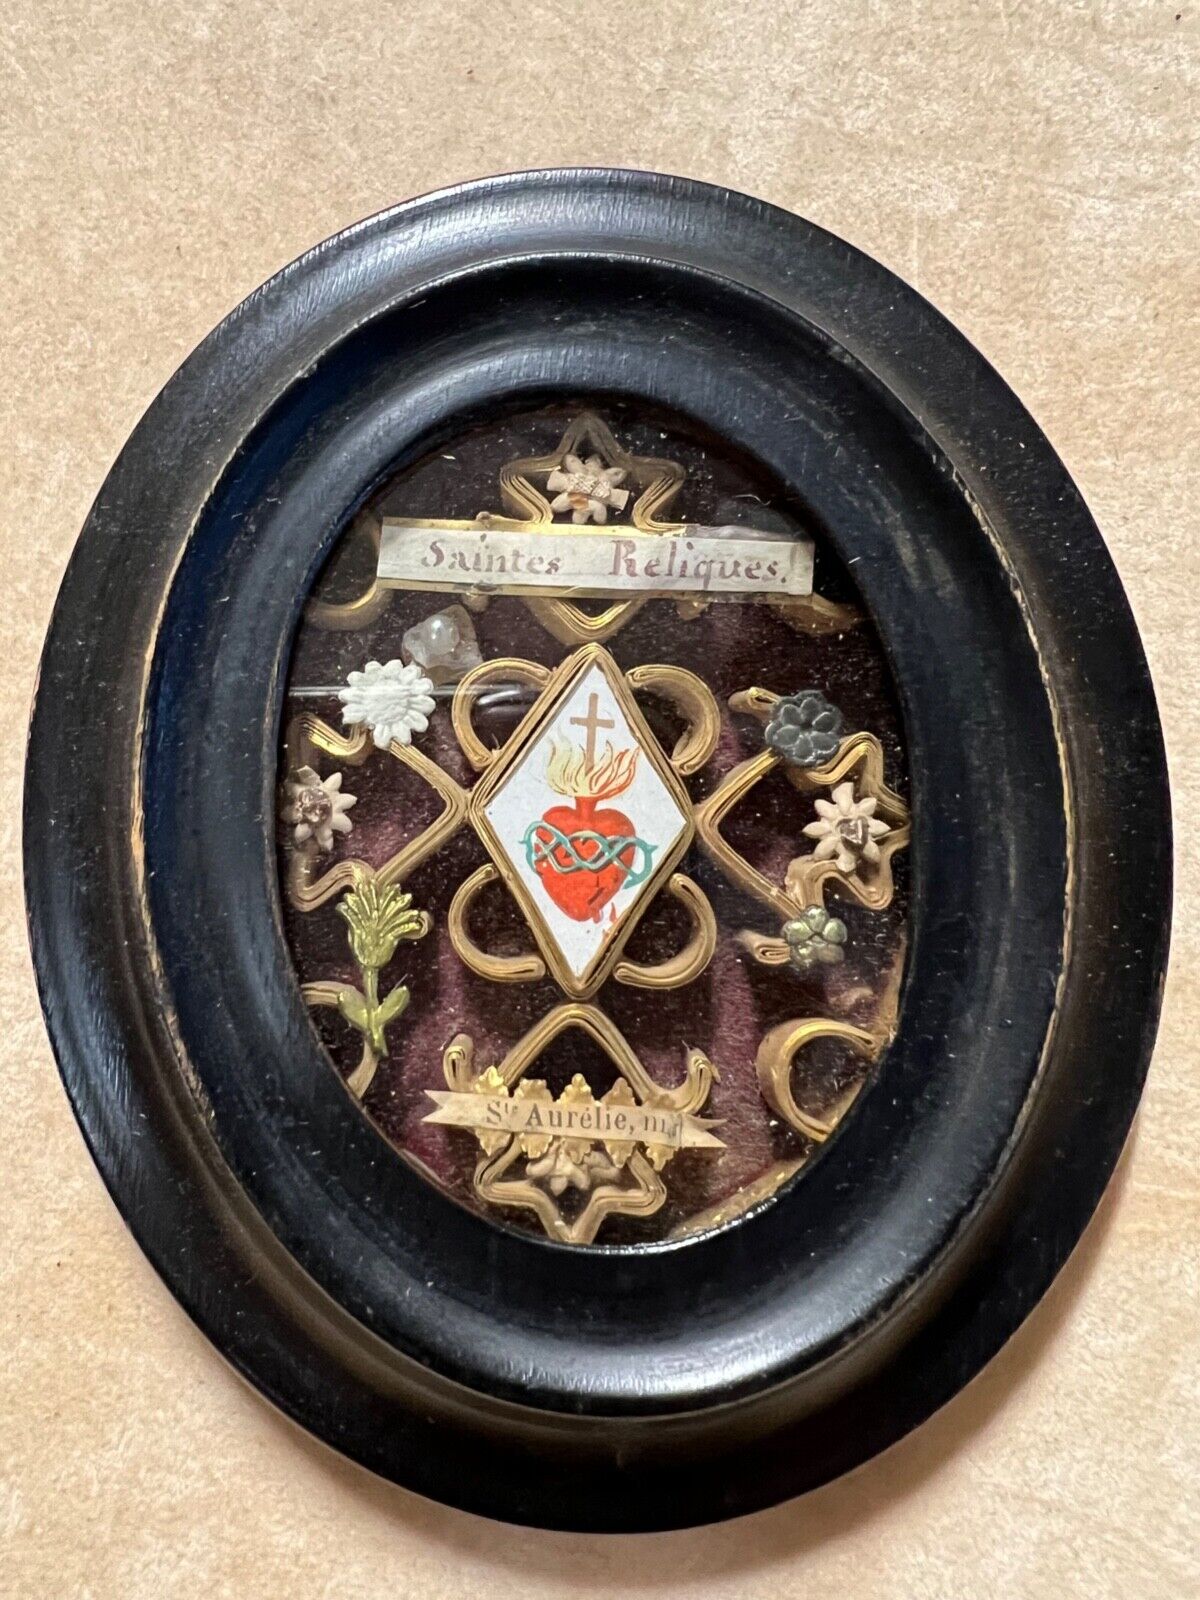 Rare Antique French Reliquaire Medallion,Ste Relique Aurelie Sacred Heart 1880's